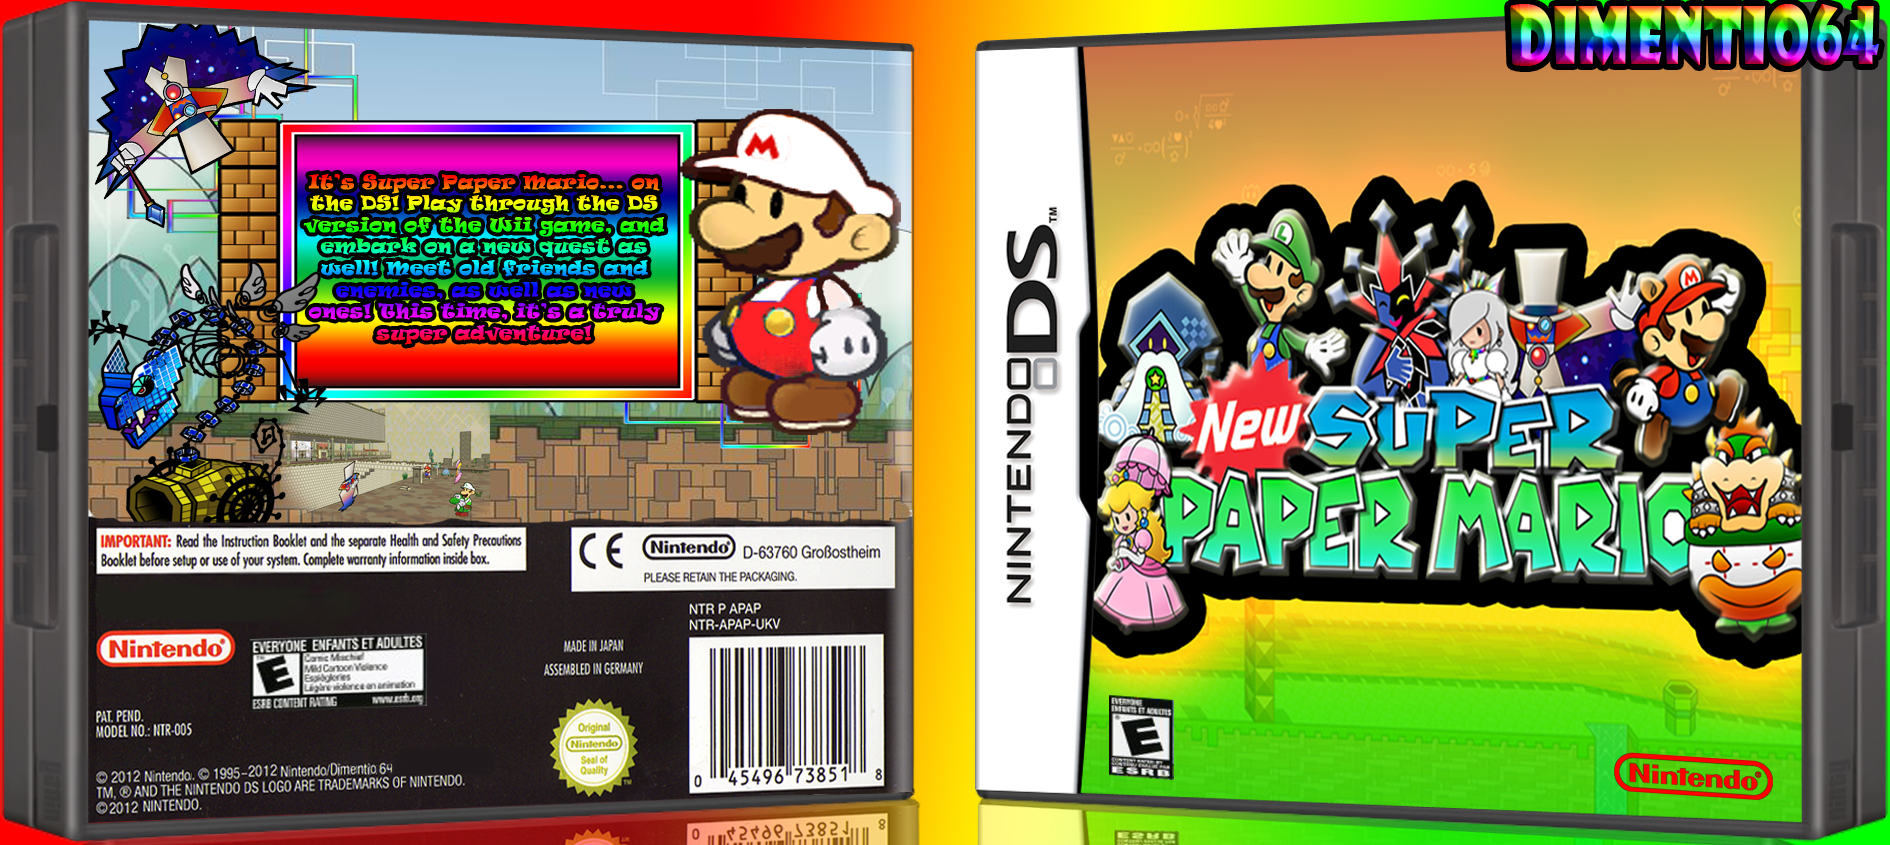 New Super Paper Mario box cover